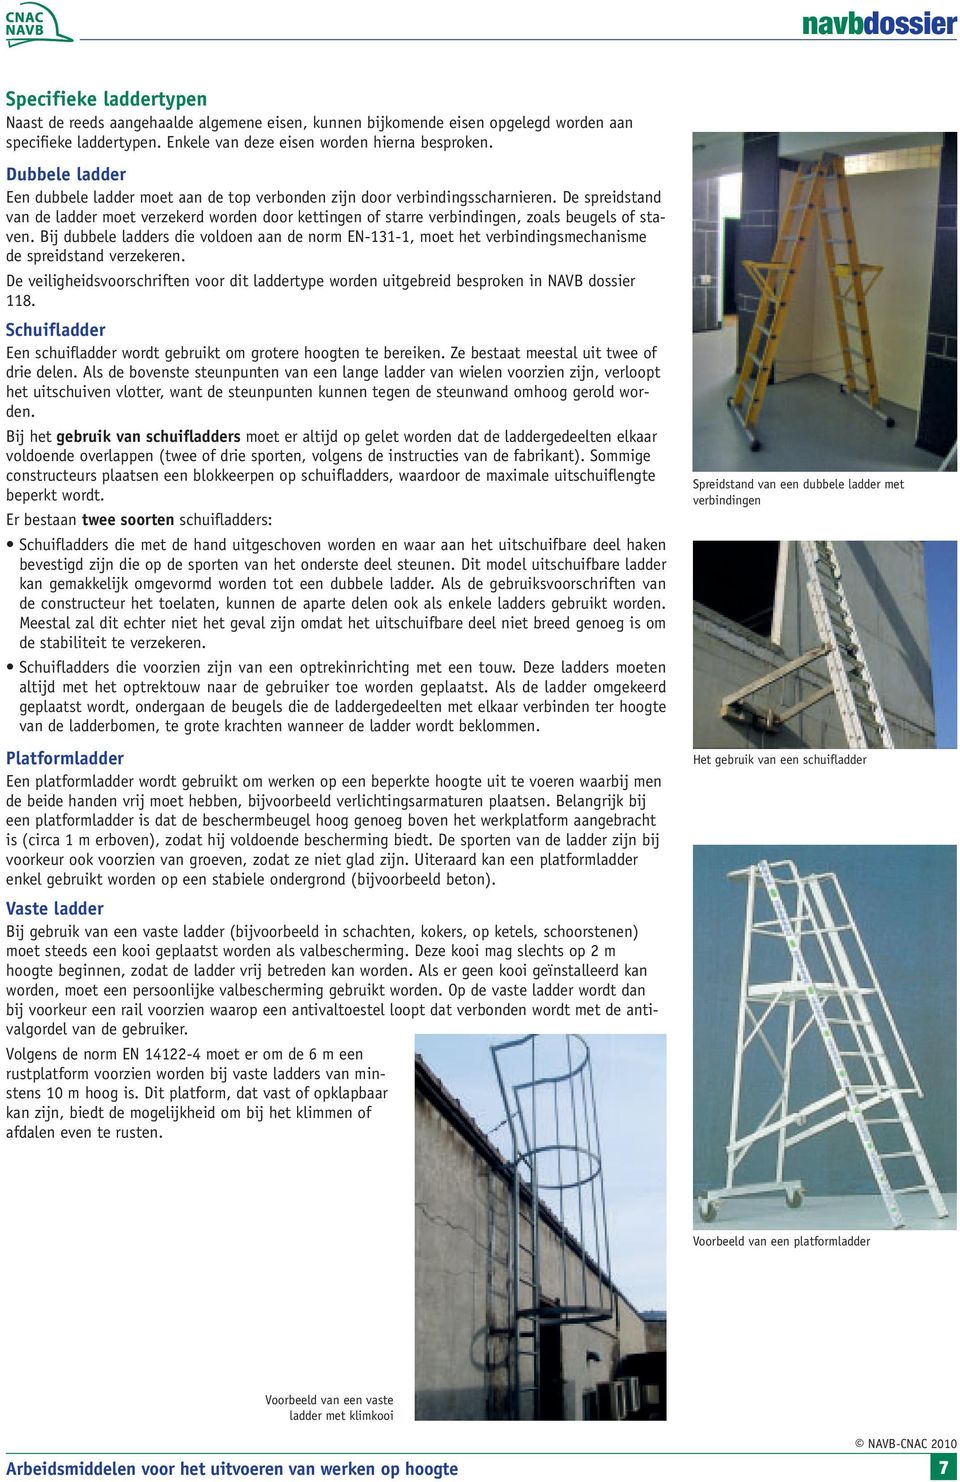 De spreidstand van de ladder moet verzekerd worden door kettingen of starre verbindingen, zoals beugels of staven.